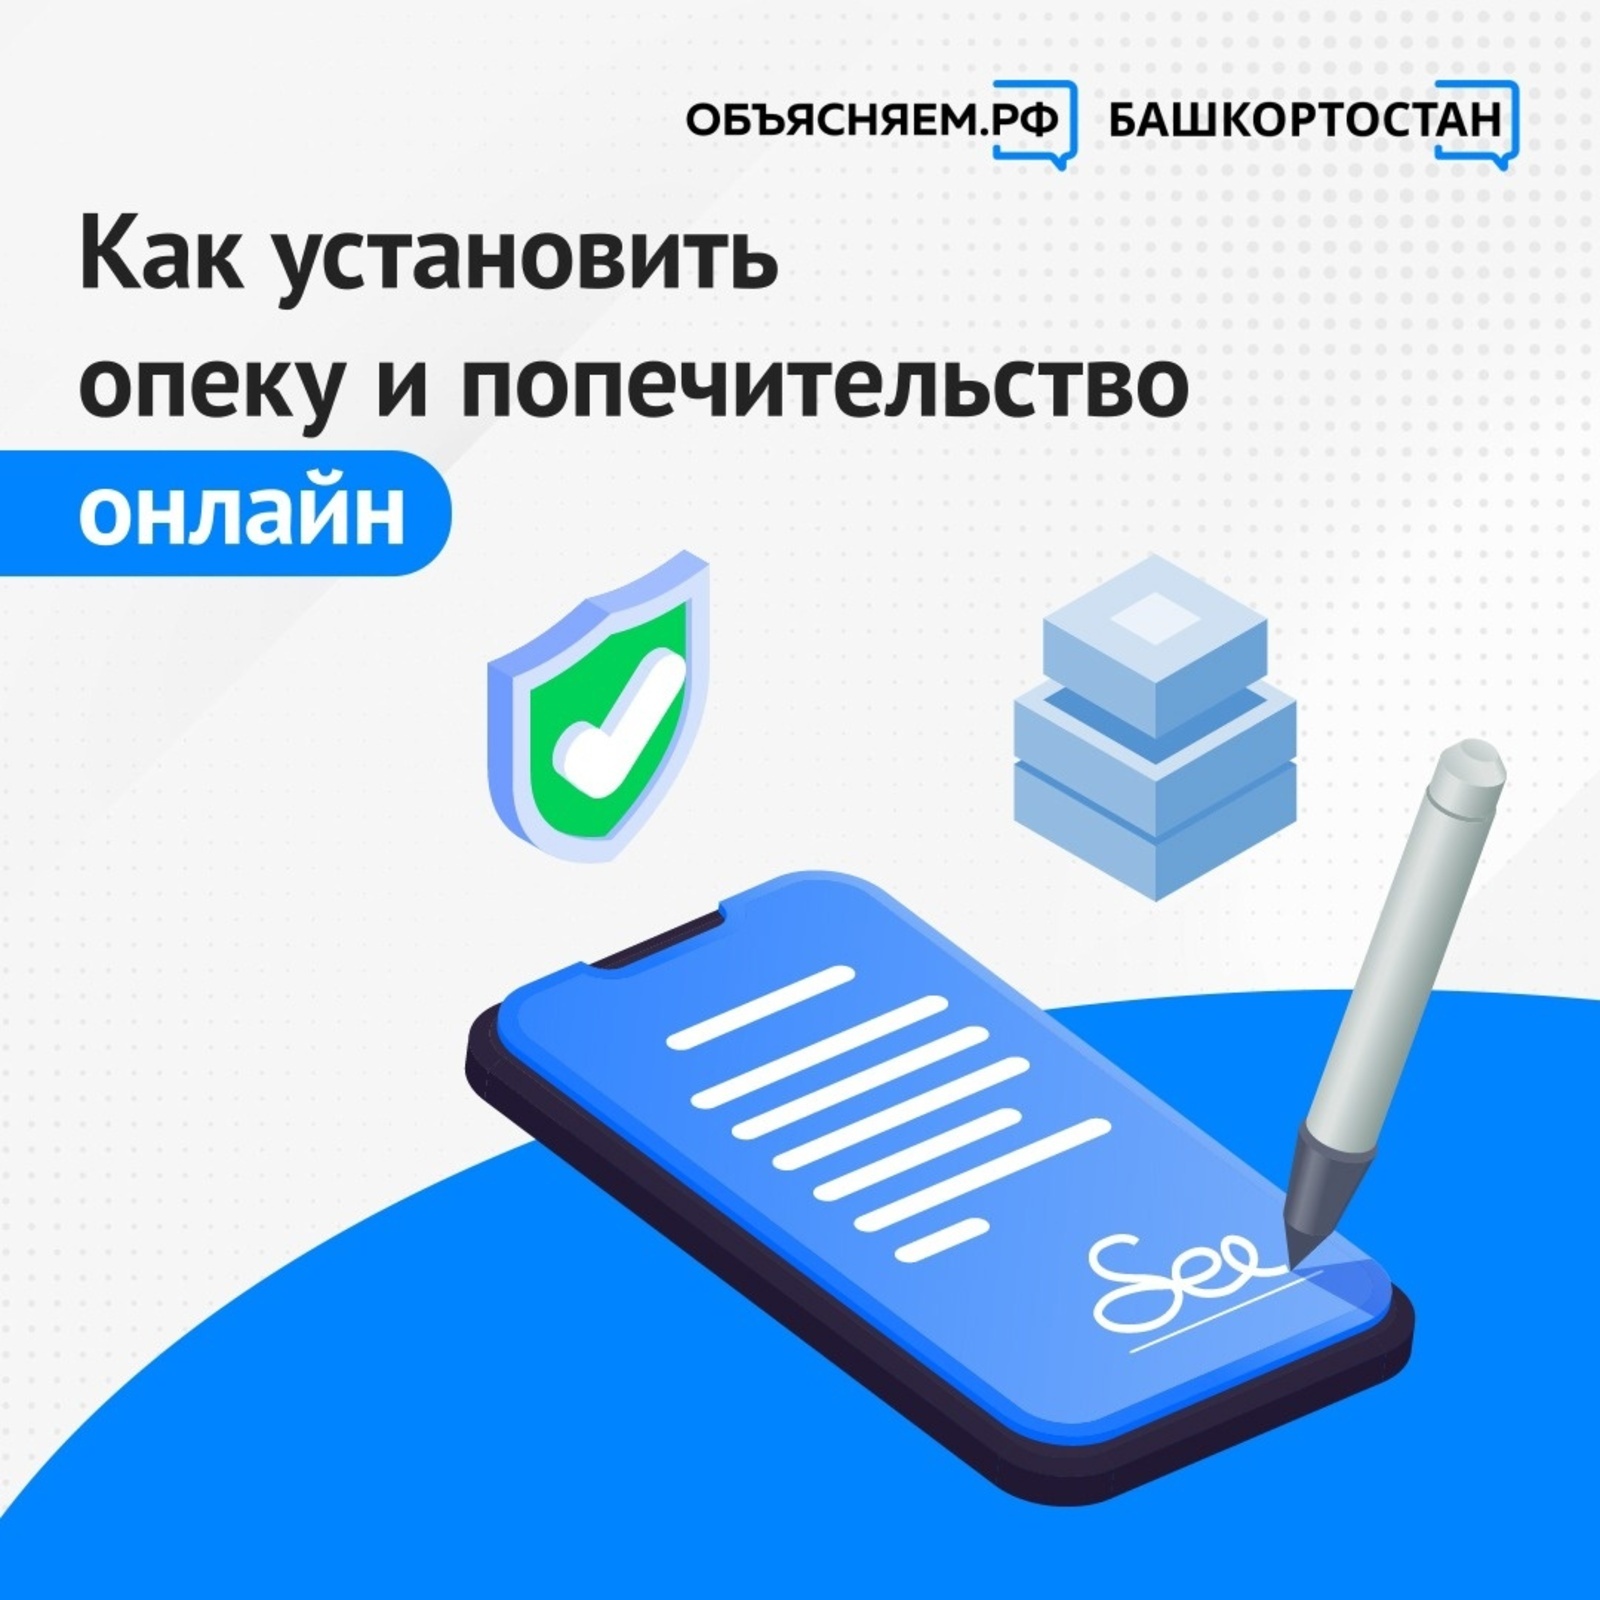 В Башкортостане теперь опеку  можно оформить онлайн